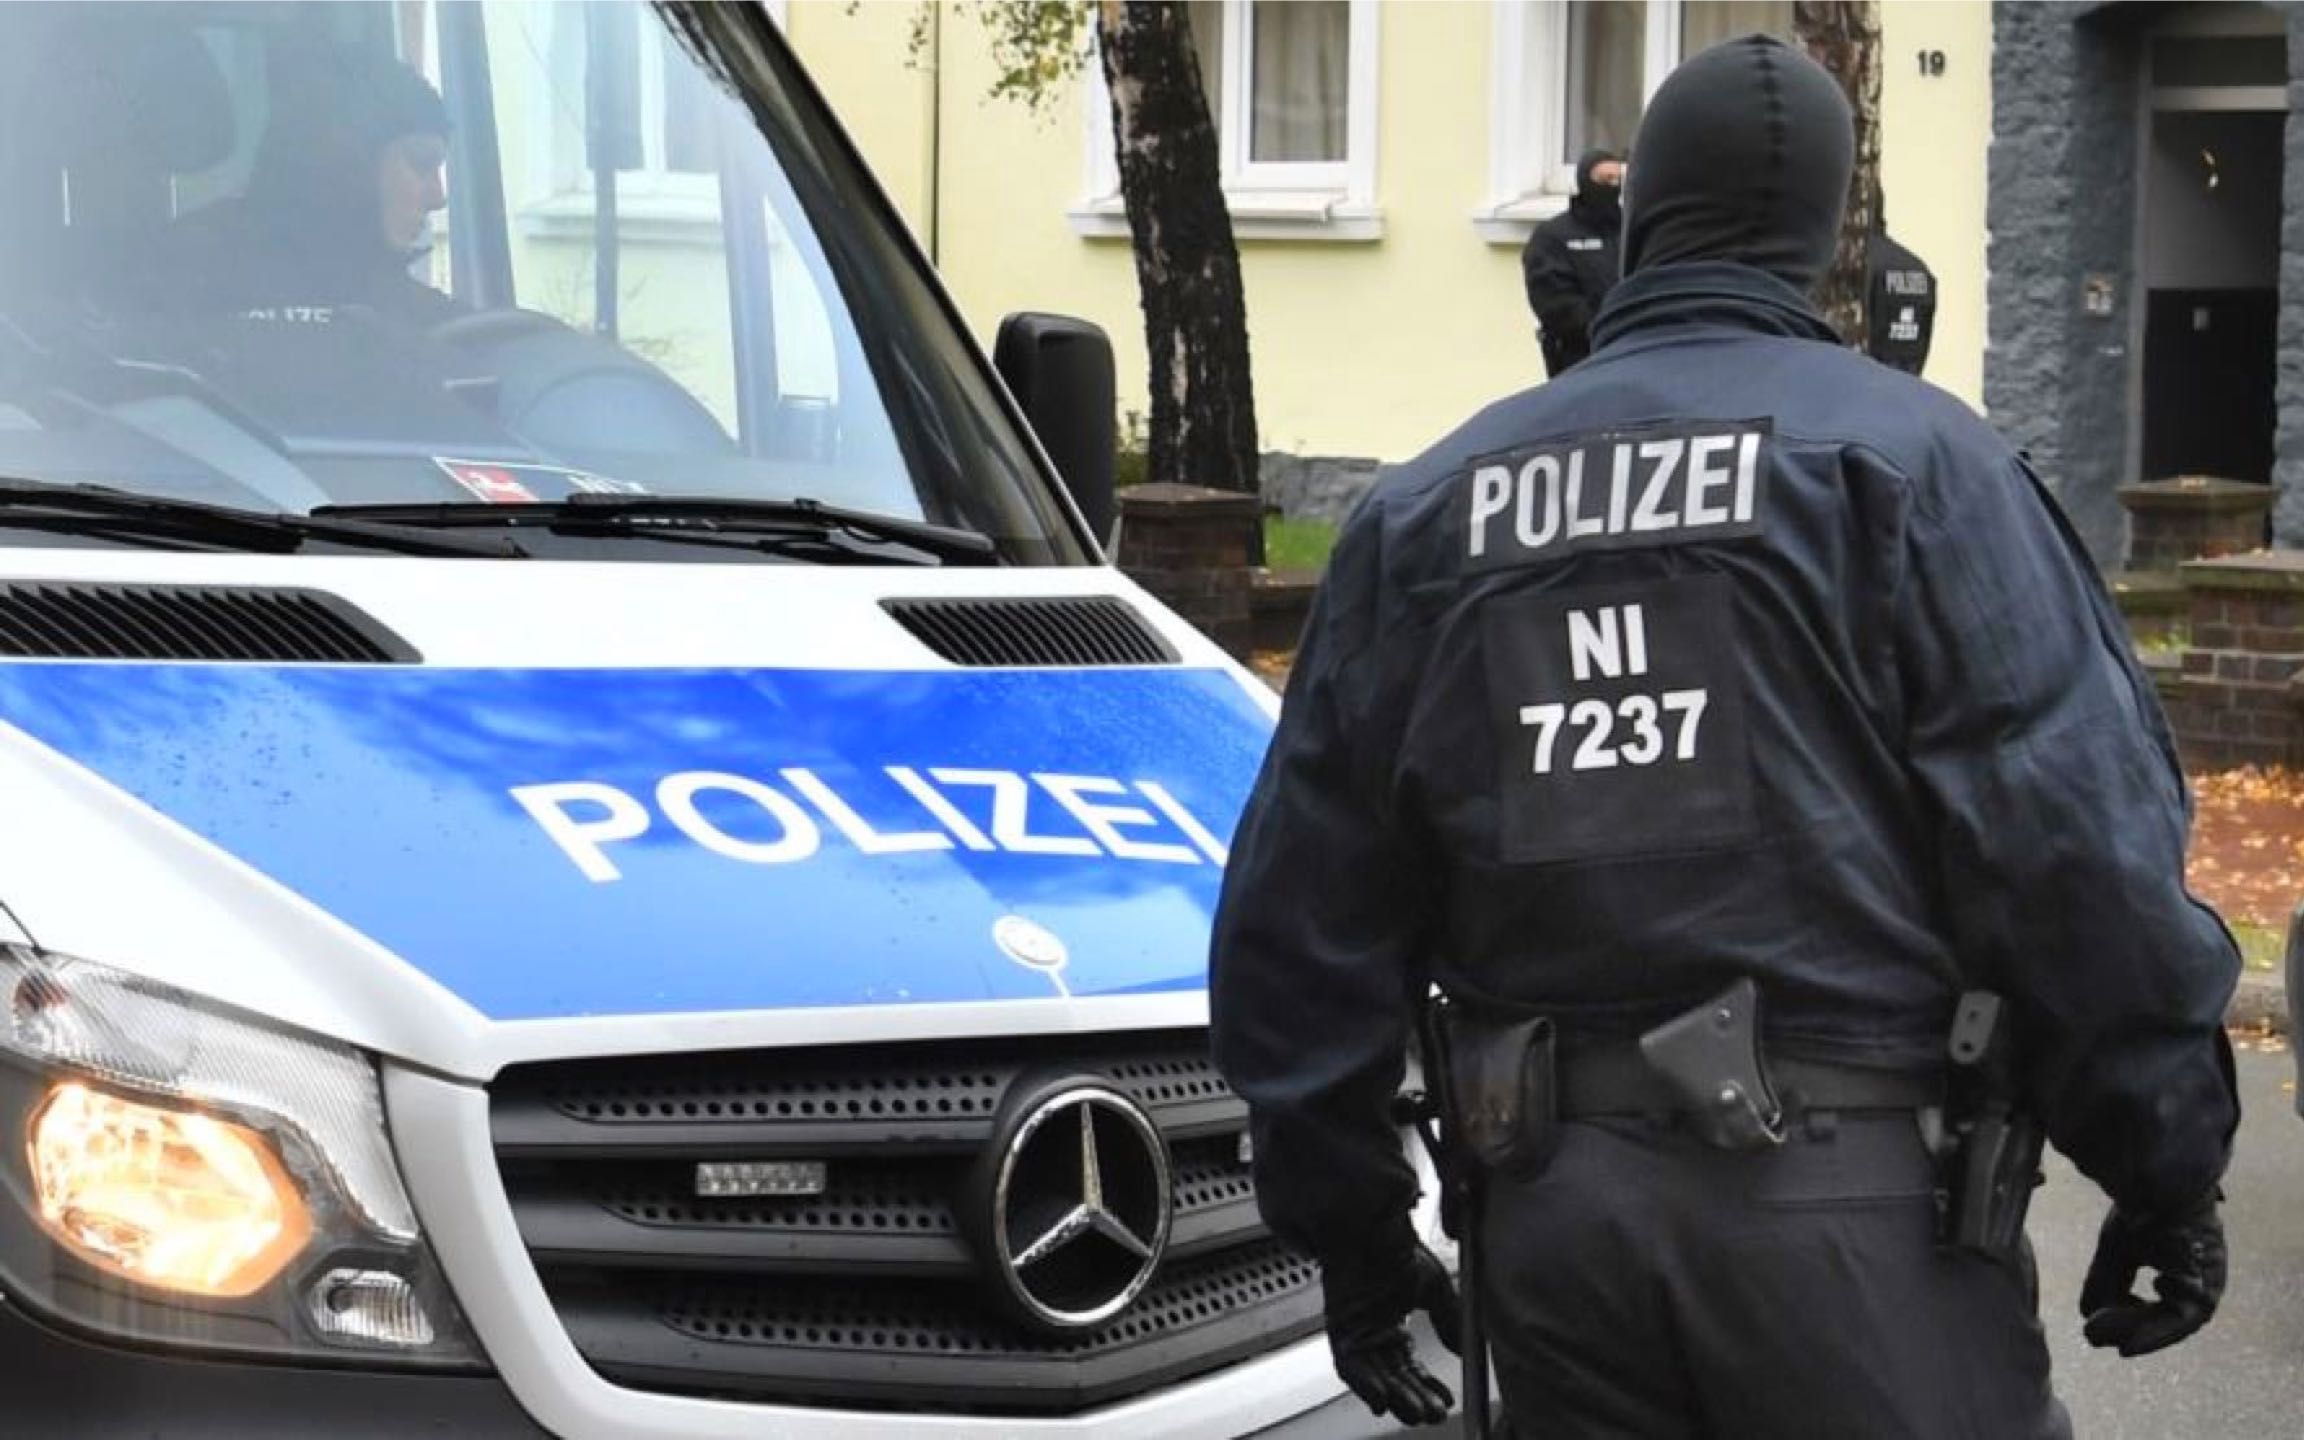 在德国,为什么人们都愿意当警察而不愿意当总统?